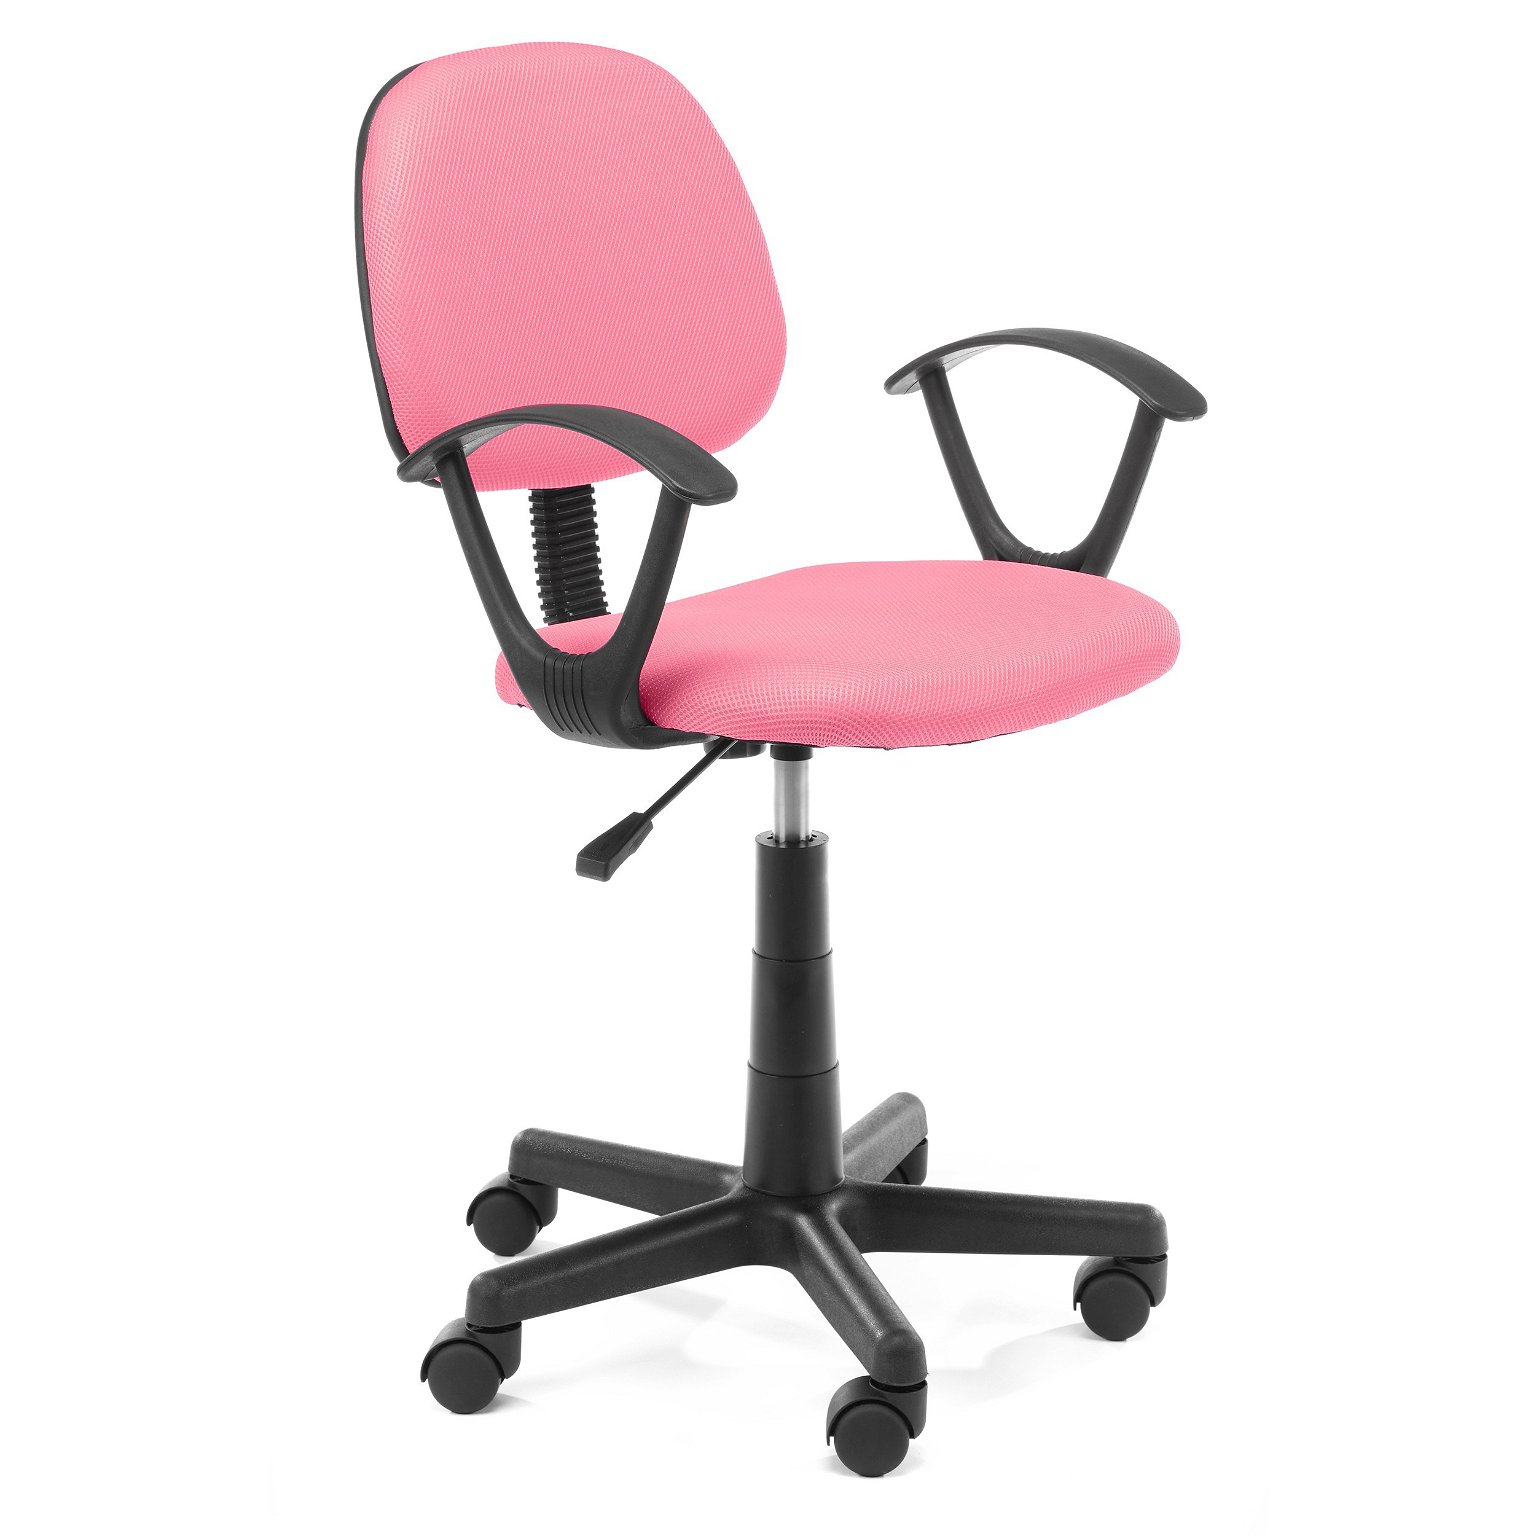 Vaikiška kėdė FD-3, rožinė